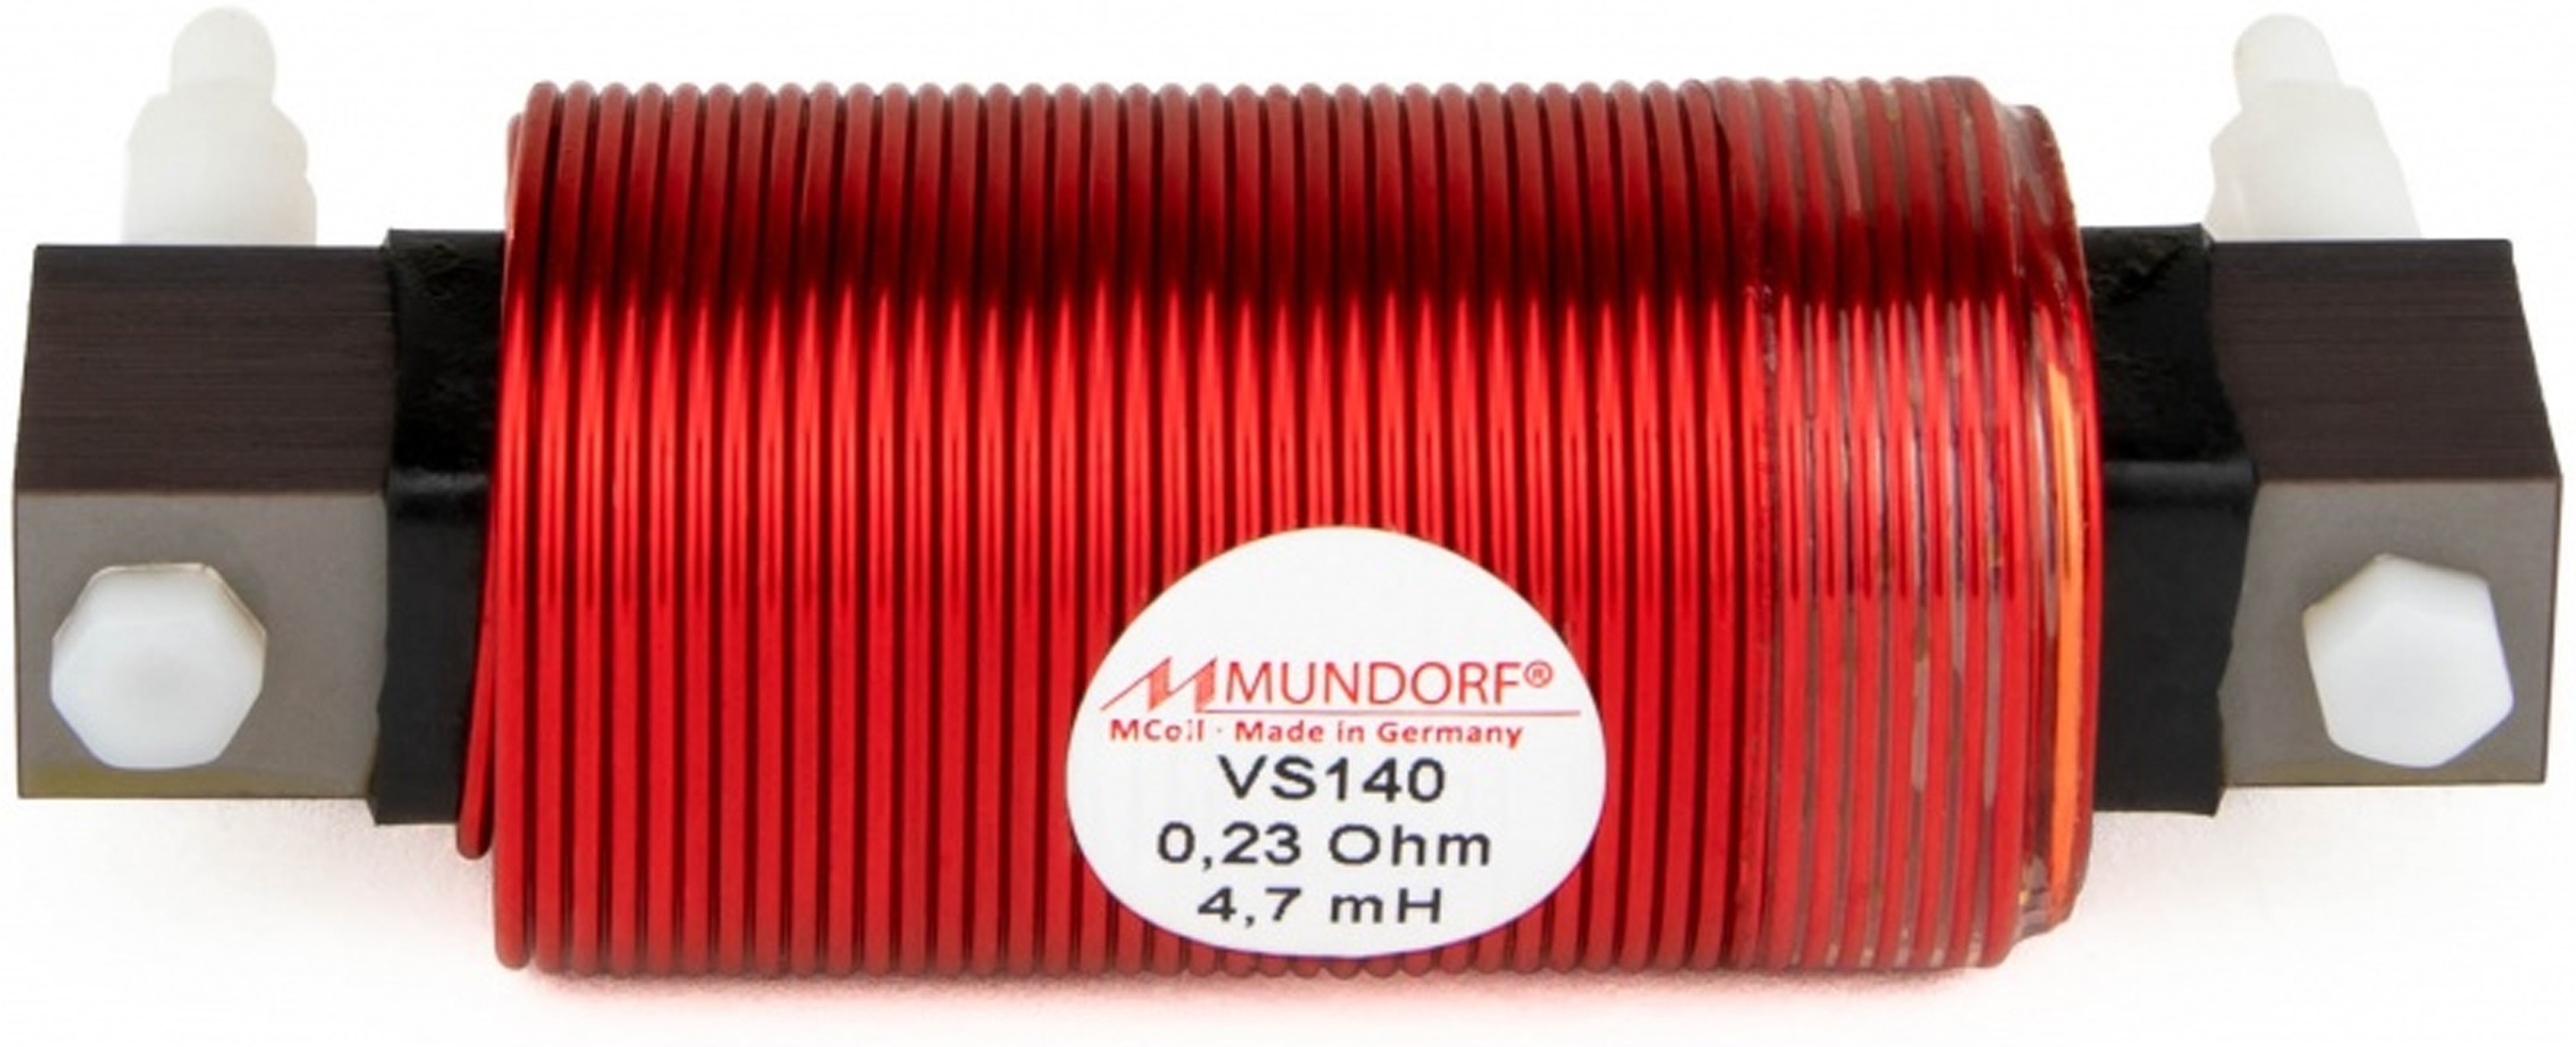 MUNDORF VS140-1.0 MCOIL ICORE Copper Coil Feron Core 1.0mH